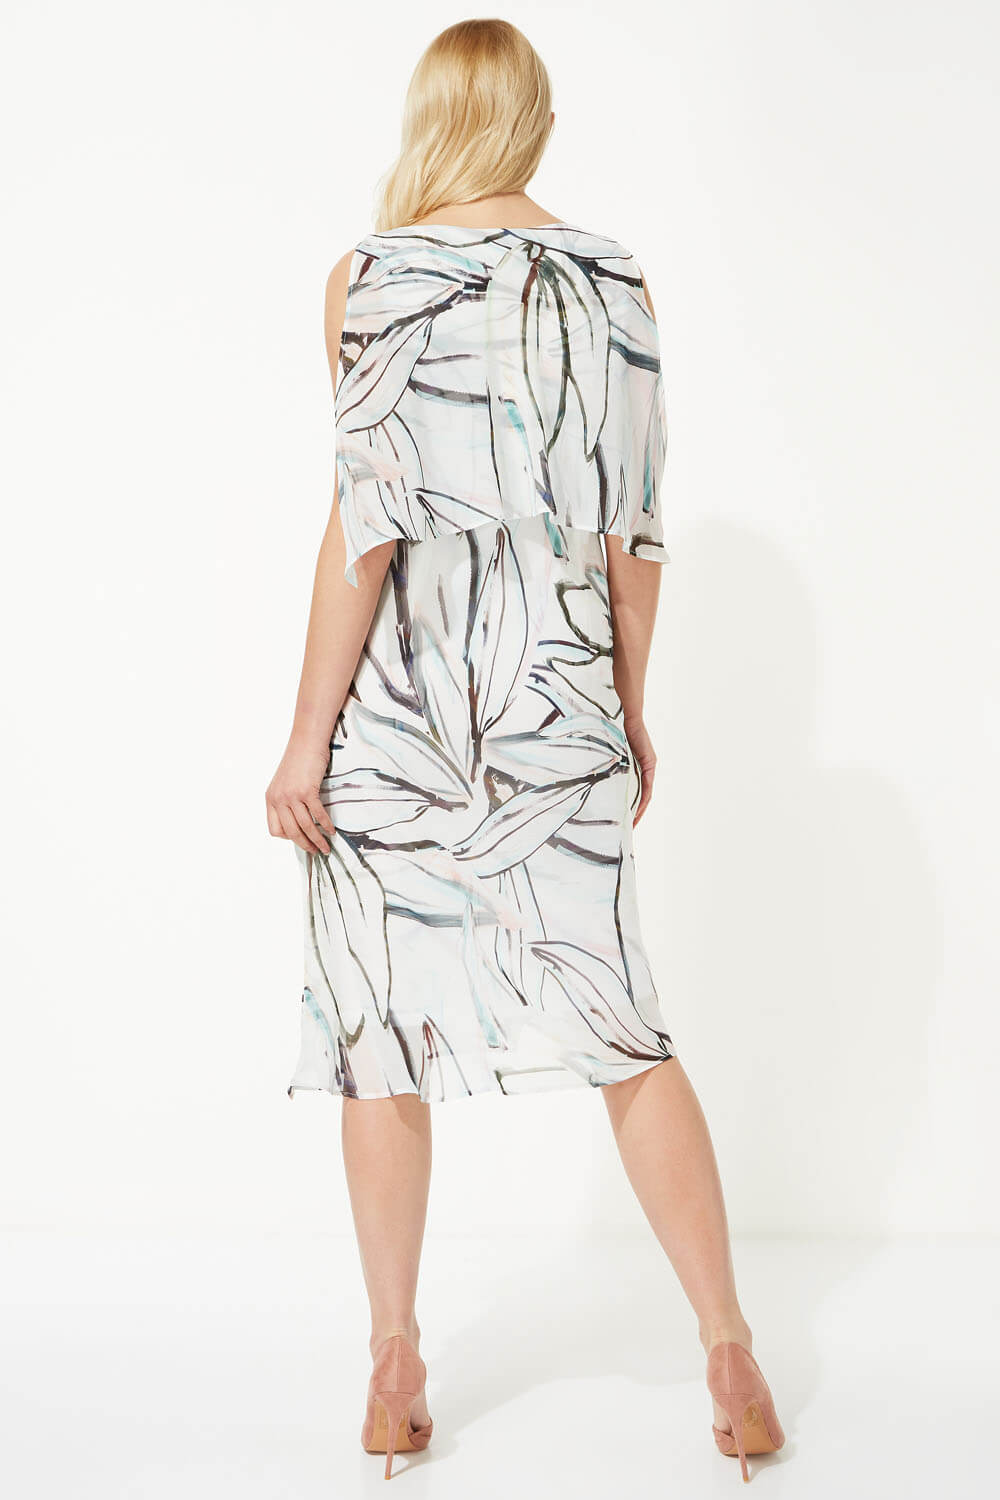 Ivory  Abstract Print Chiffon Layer Midi Dress, Image 3 of 5